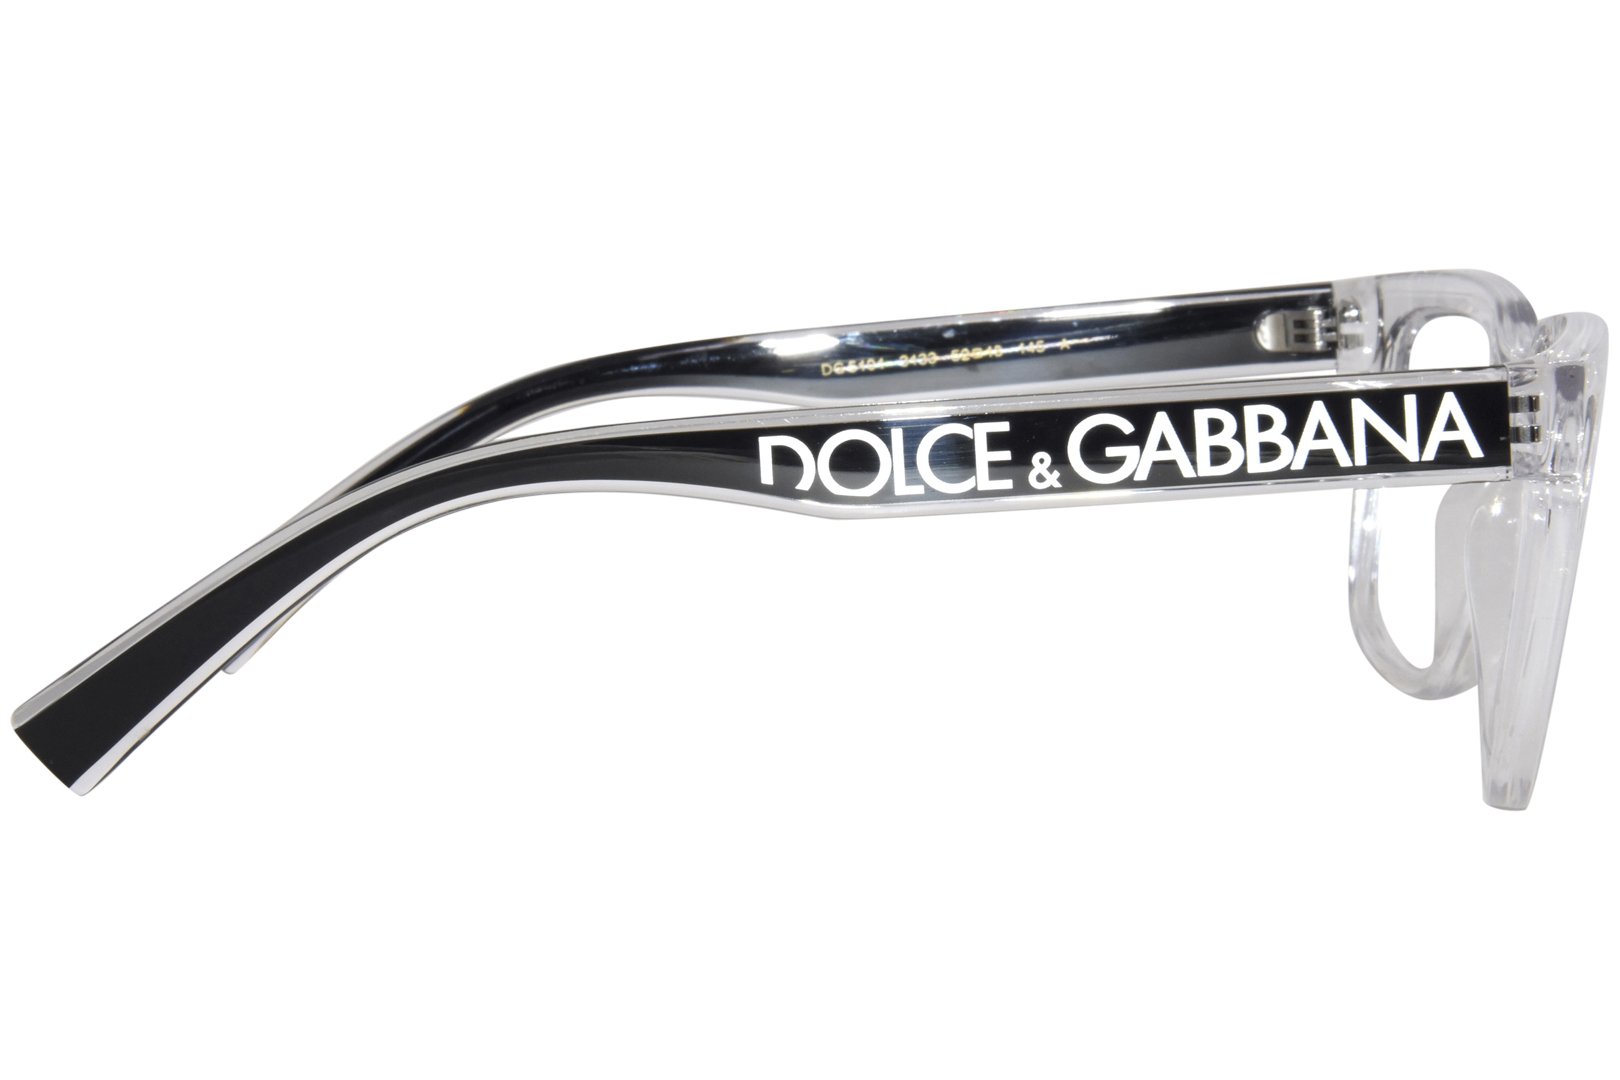 Dolce & Gabbana DG5101 3133 Eyeglasses Men's Crystal Full Rim Square ...